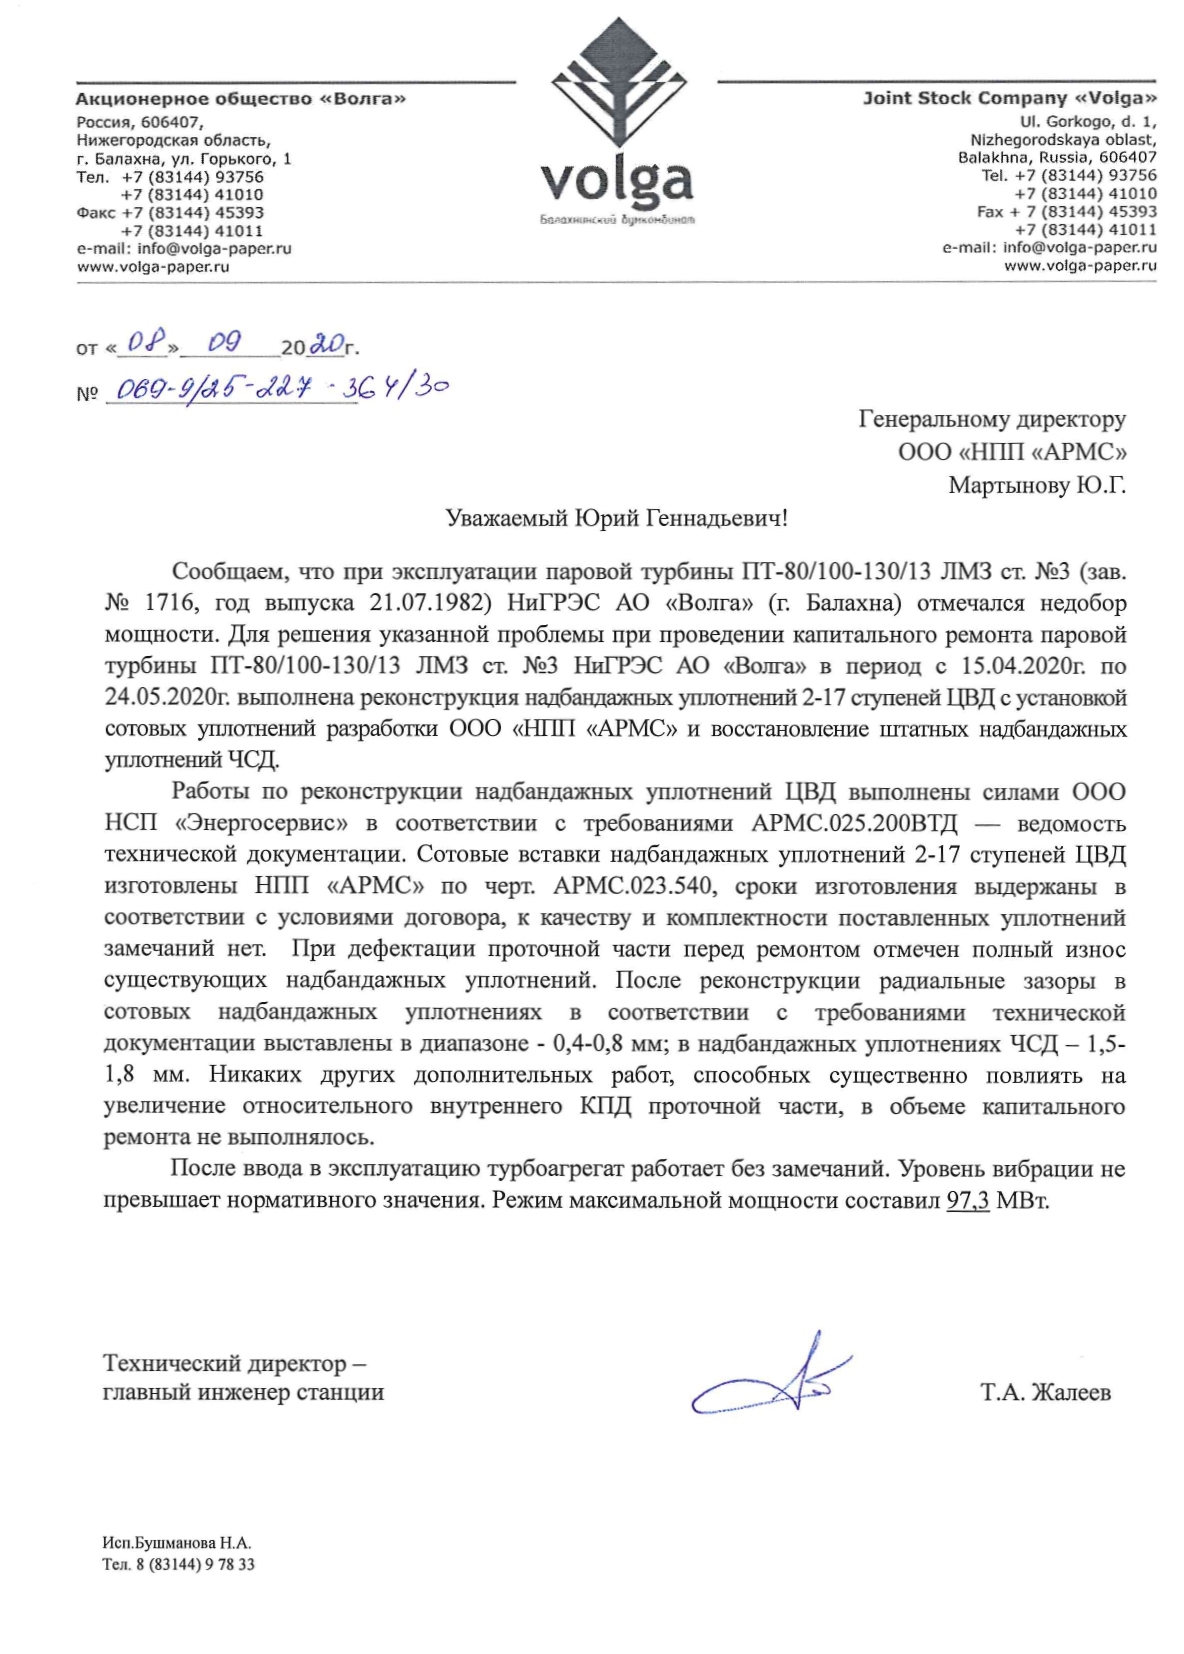 Отзыв АО Волга о модернизации ПТ-80-130